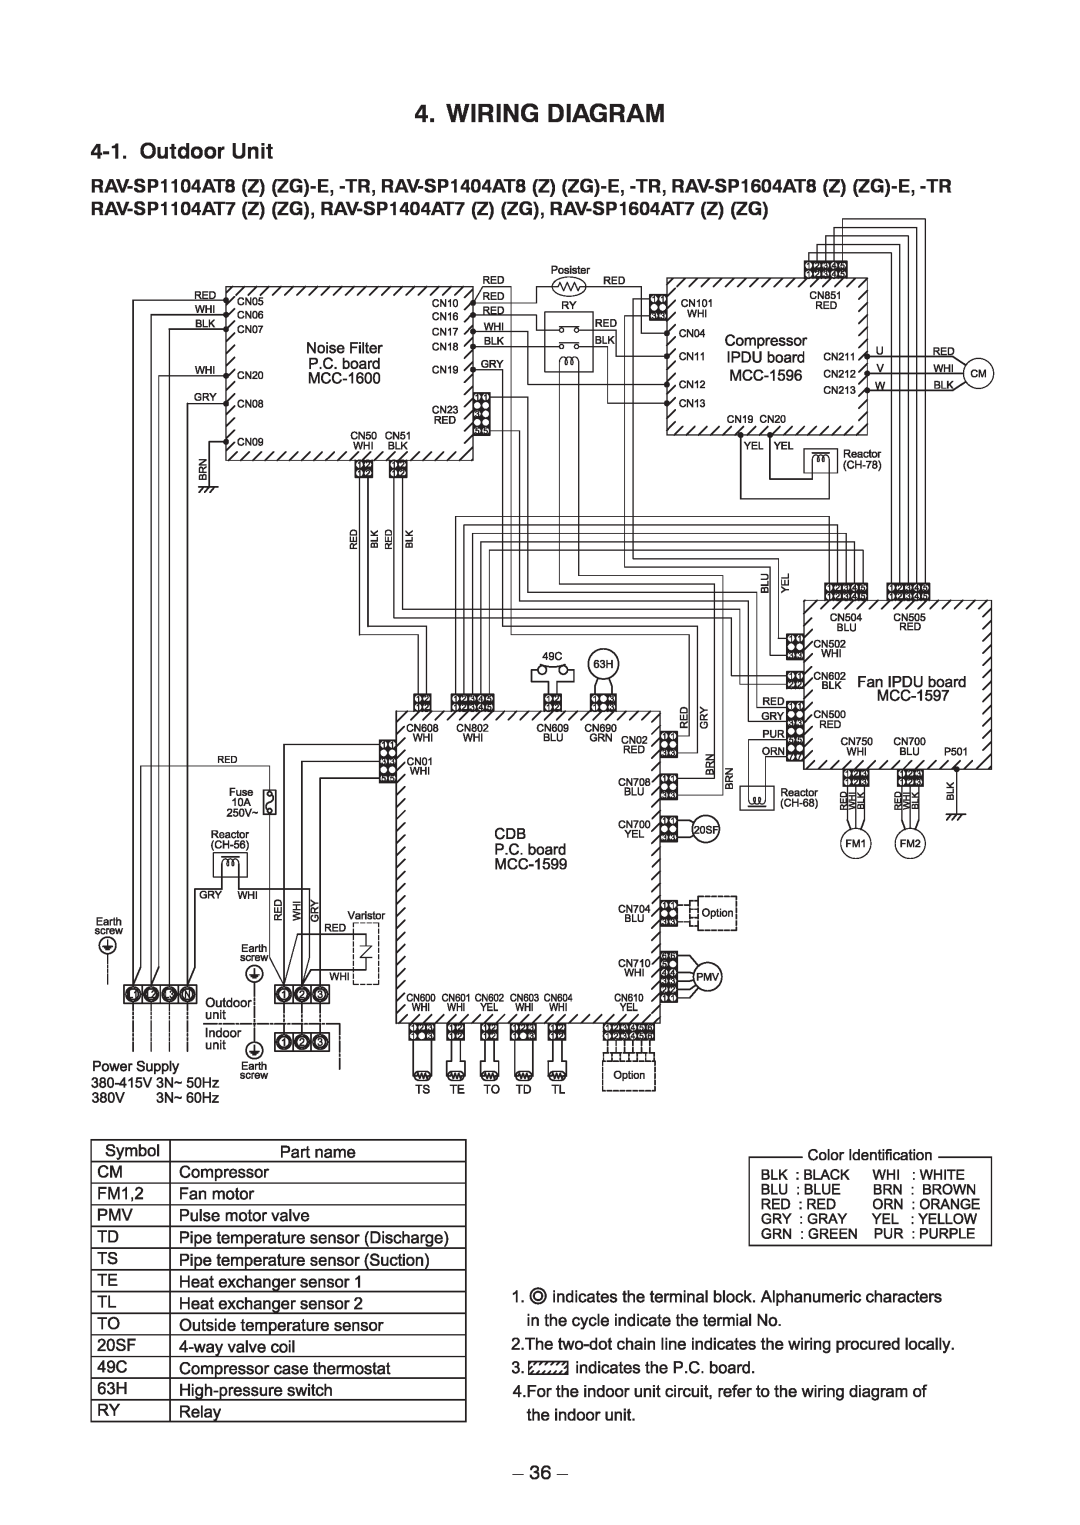 Toshiba RAV-SP1104AT8Z-TR, RAV-SP1104AT8ZG-TR, RAV-SP1104AT8-TR, RAV-SP1404AT8ZG-TR Wiring Diagram, Outdoor Unit, 36 